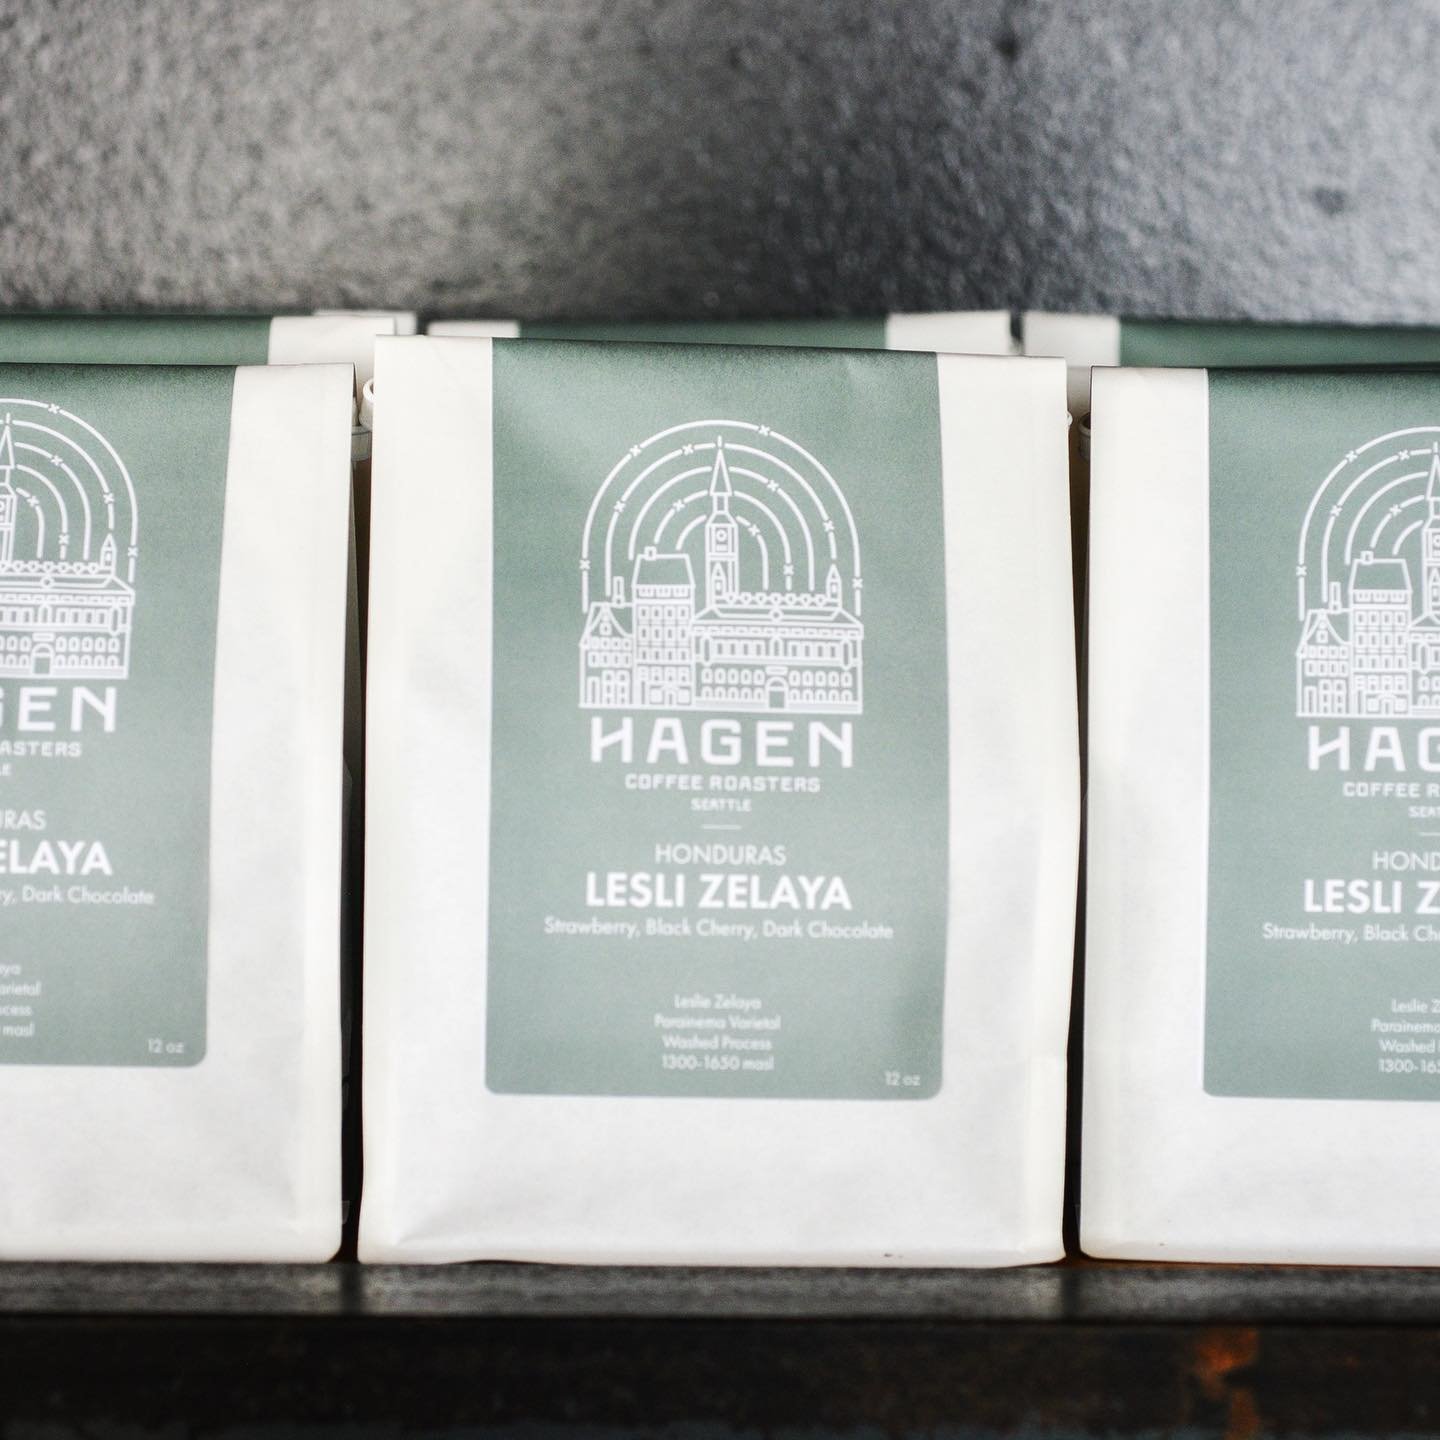 Hagen Roaster Coffee Beans